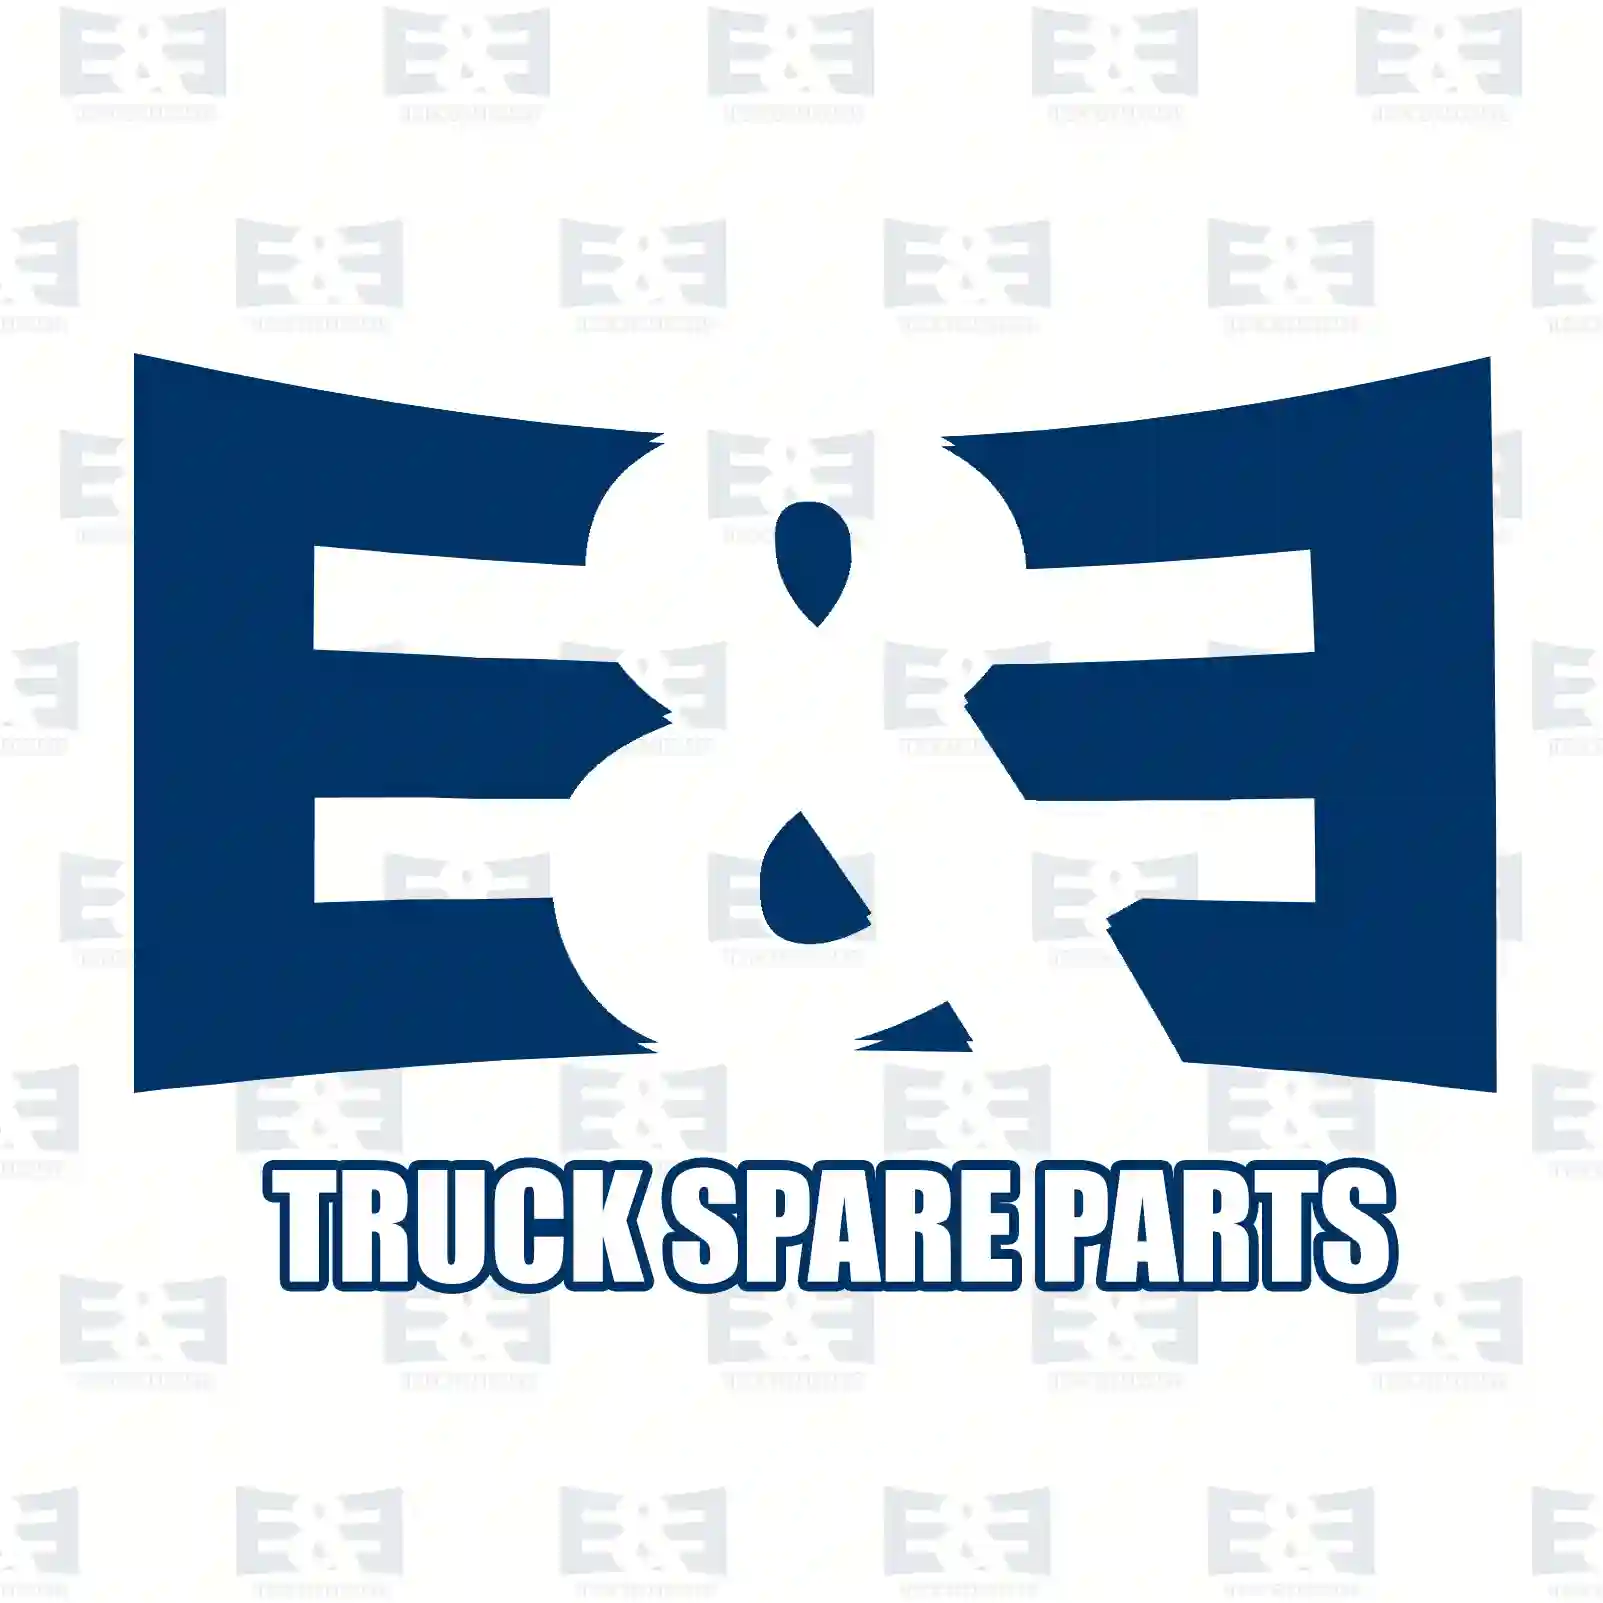 Engine hood slot, lower, 2E2276112, 9417500384 ||  2E2276112 E&E Truck Spare Parts | Truck Spare Parts, Auotomotive Spare Parts Engine hood slot, lower, 2E2276112, 9417500384 ||  2E2276112 E&E Truck Spare Parts | Truck Spare Parts, Auotomotive Spare Parts